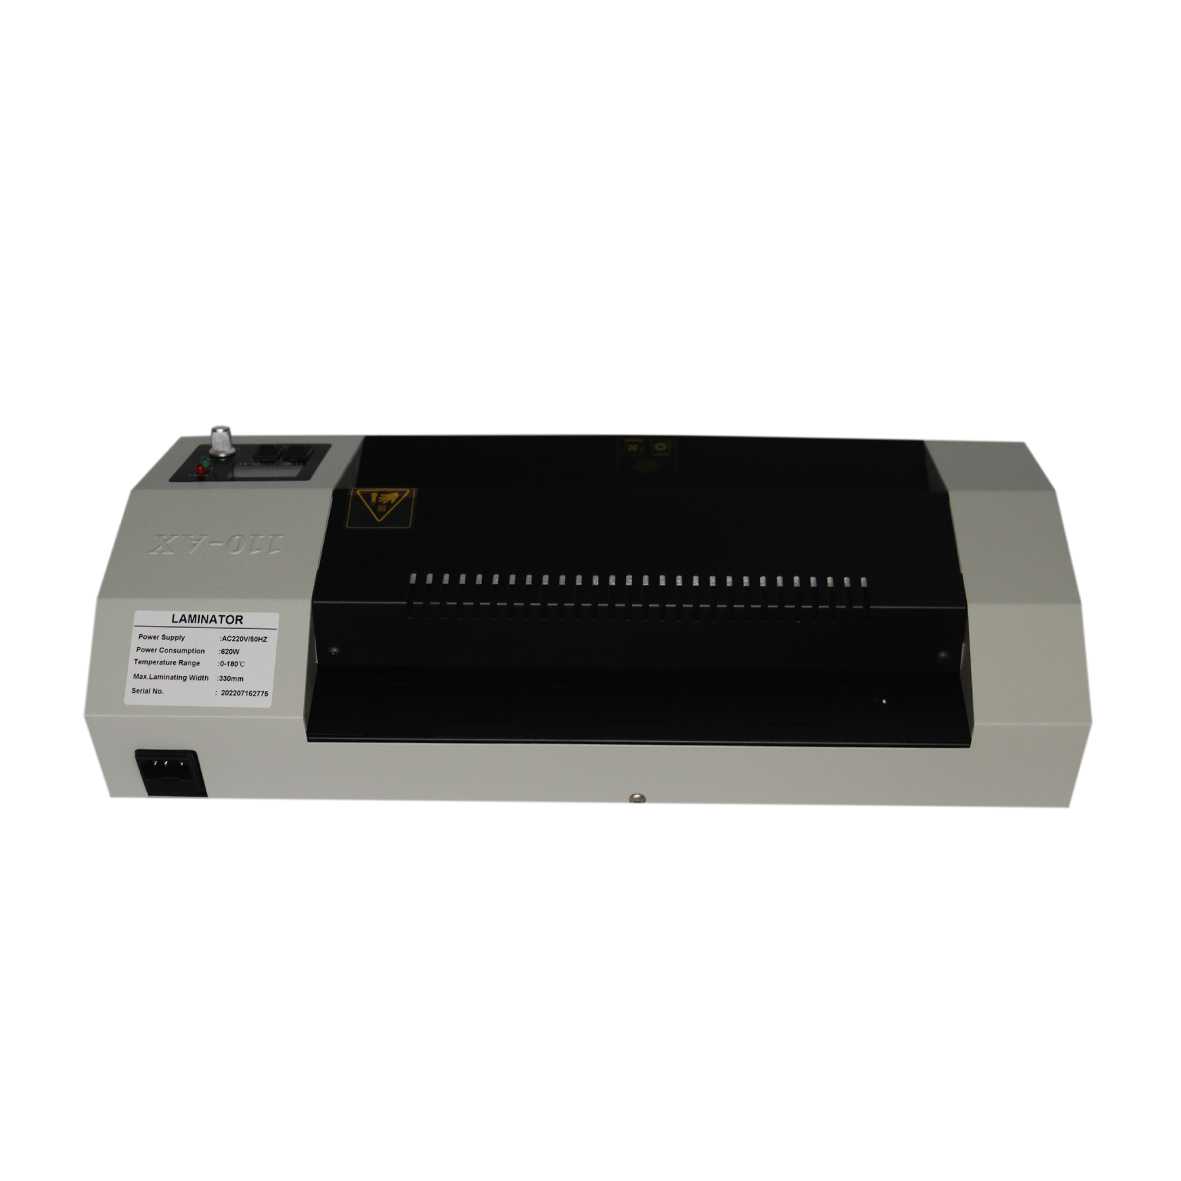 دستگاه پرس کارت یا لمینت مدل PDL-330